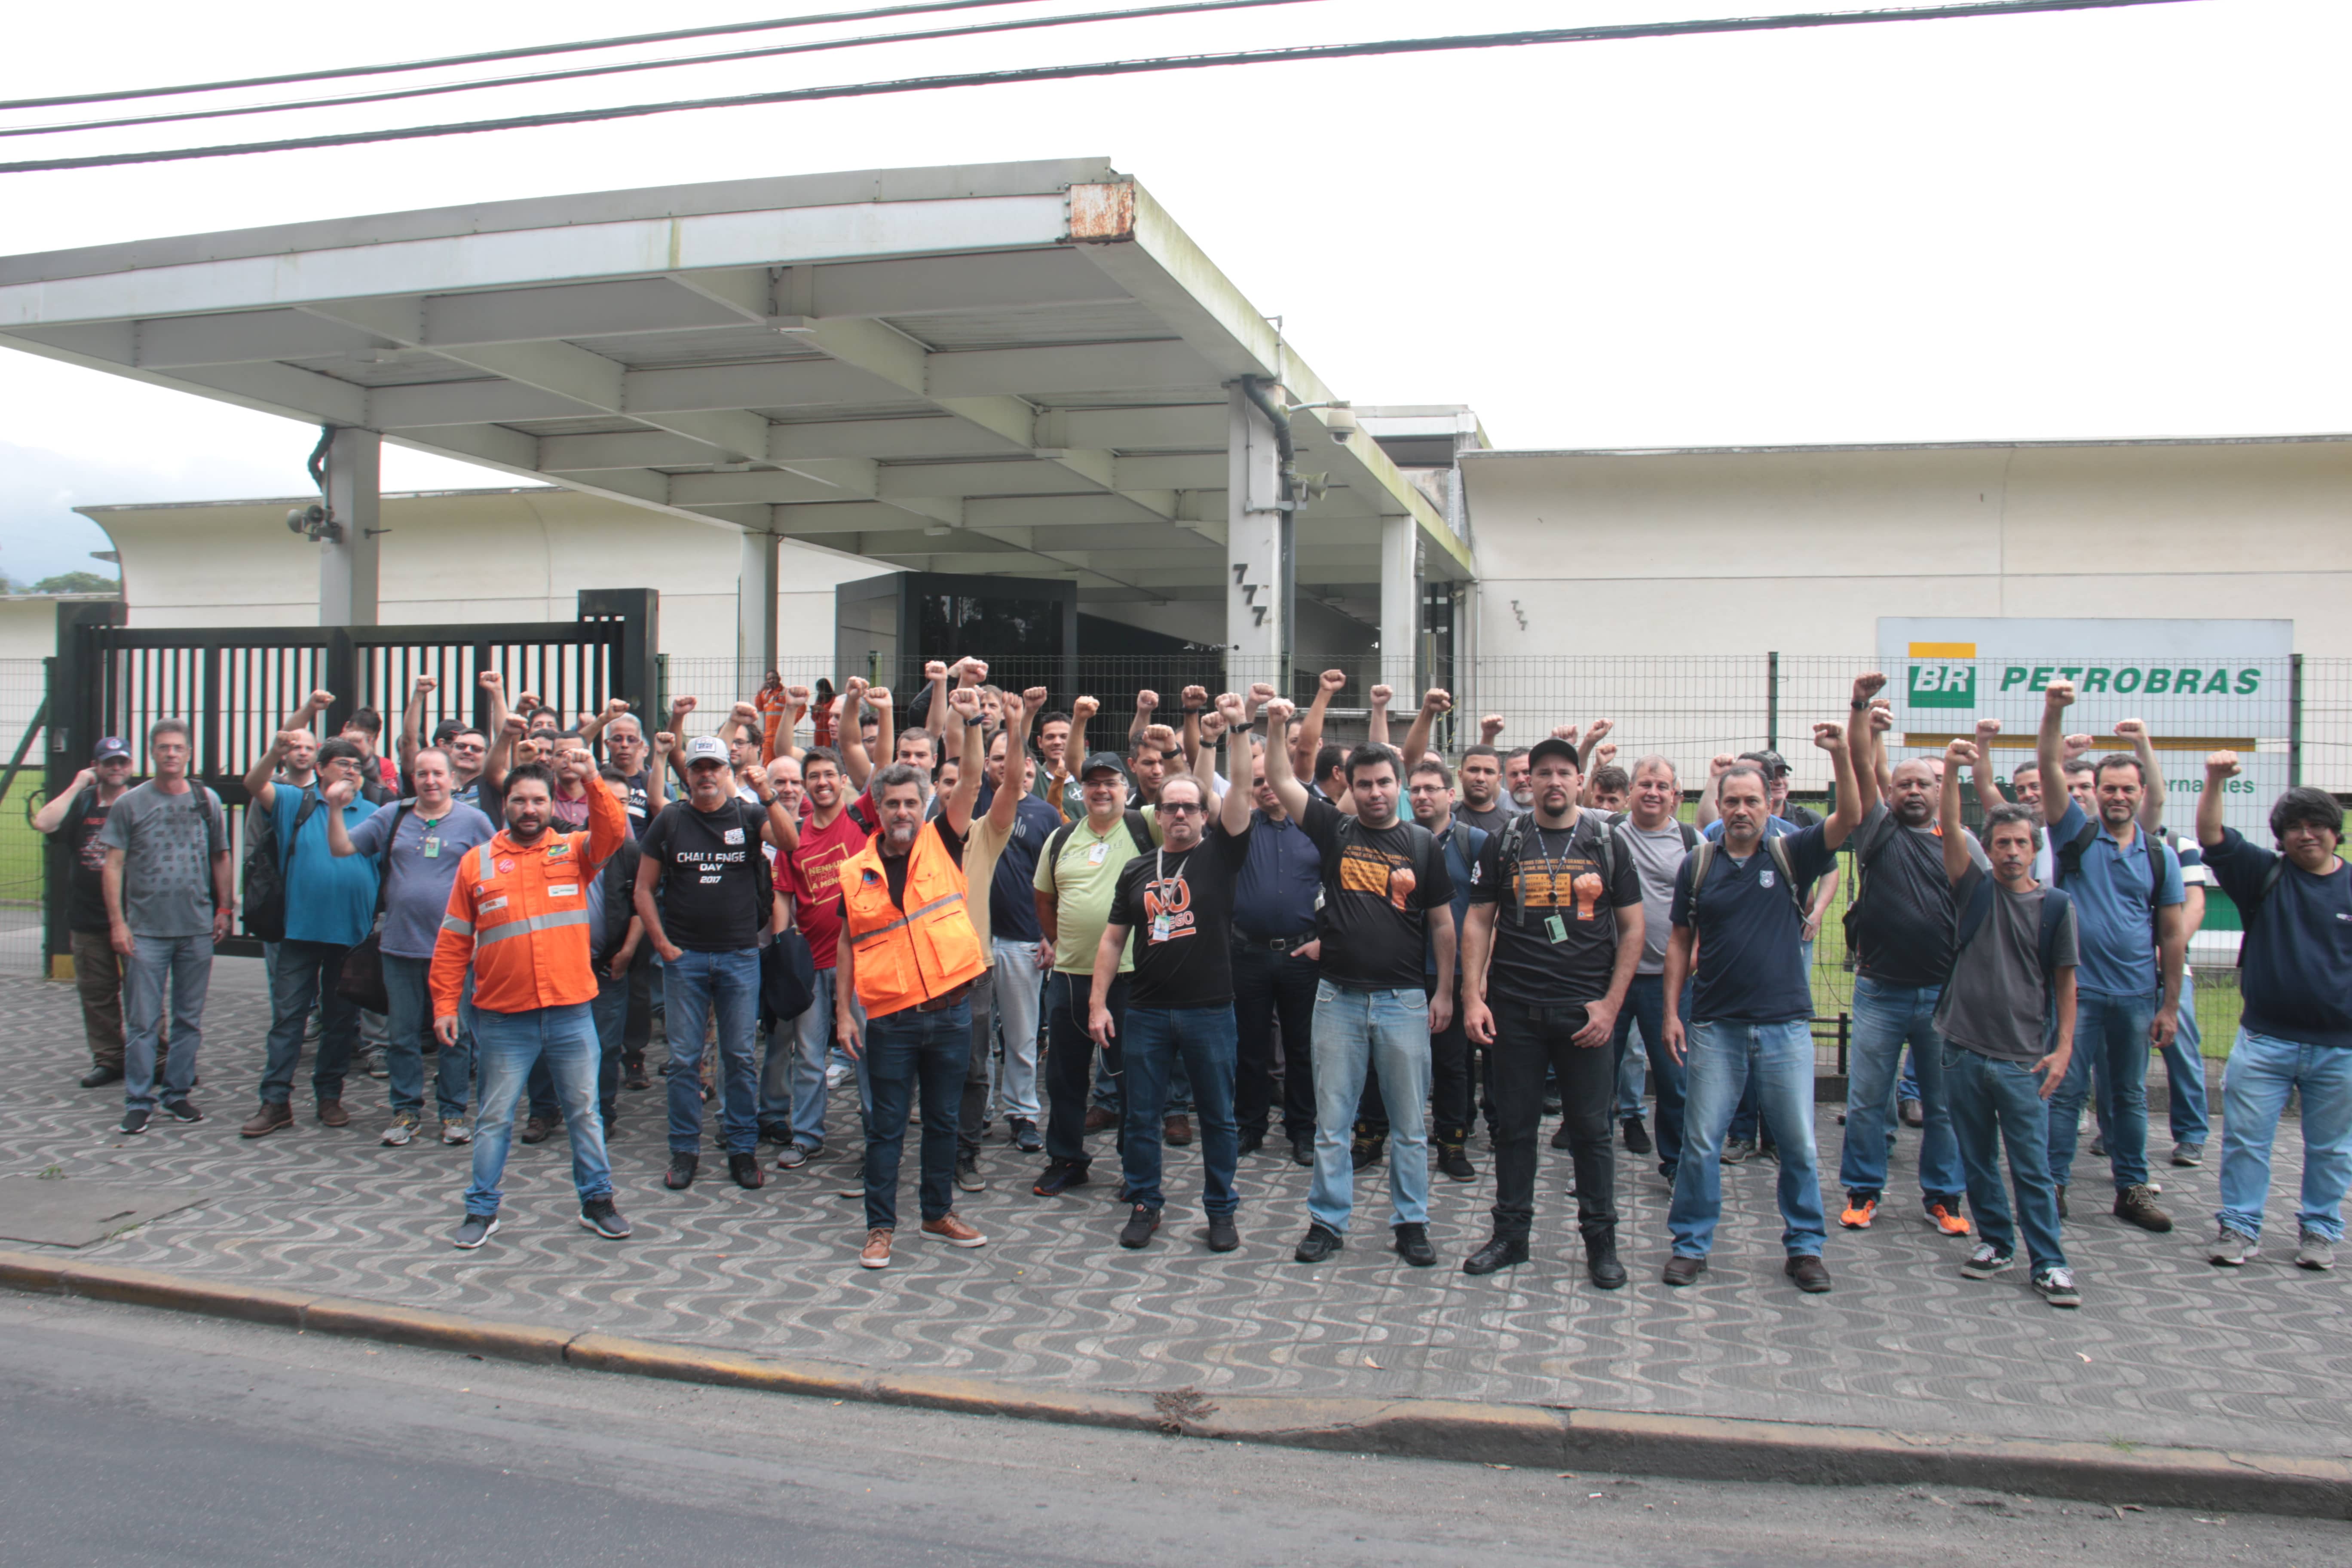 Mobilização na região: FUP descartou greve, mas FNP está insatisfeita